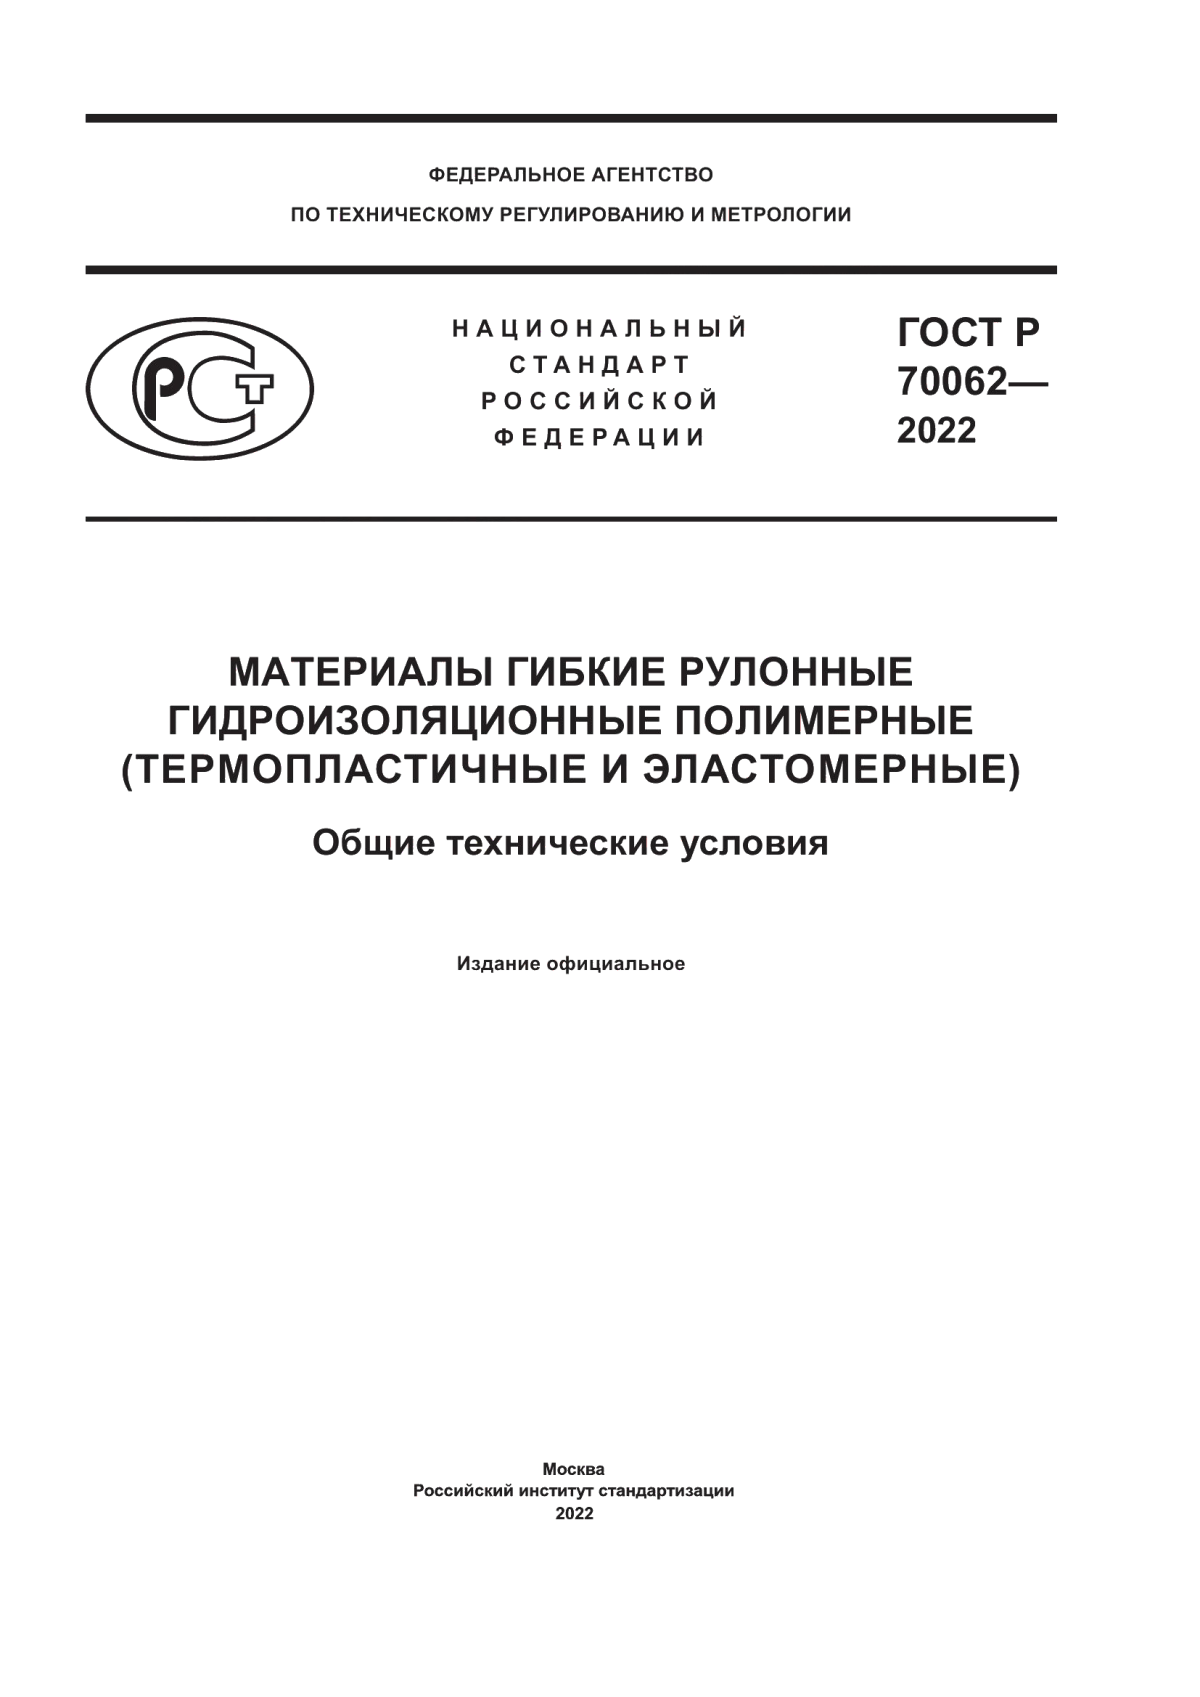 ГОСТ Р 70062-2022 Материалы гибкие рулонные гидроизоляционные полимерные (термопластичные и эластомерные). Общие технические условия